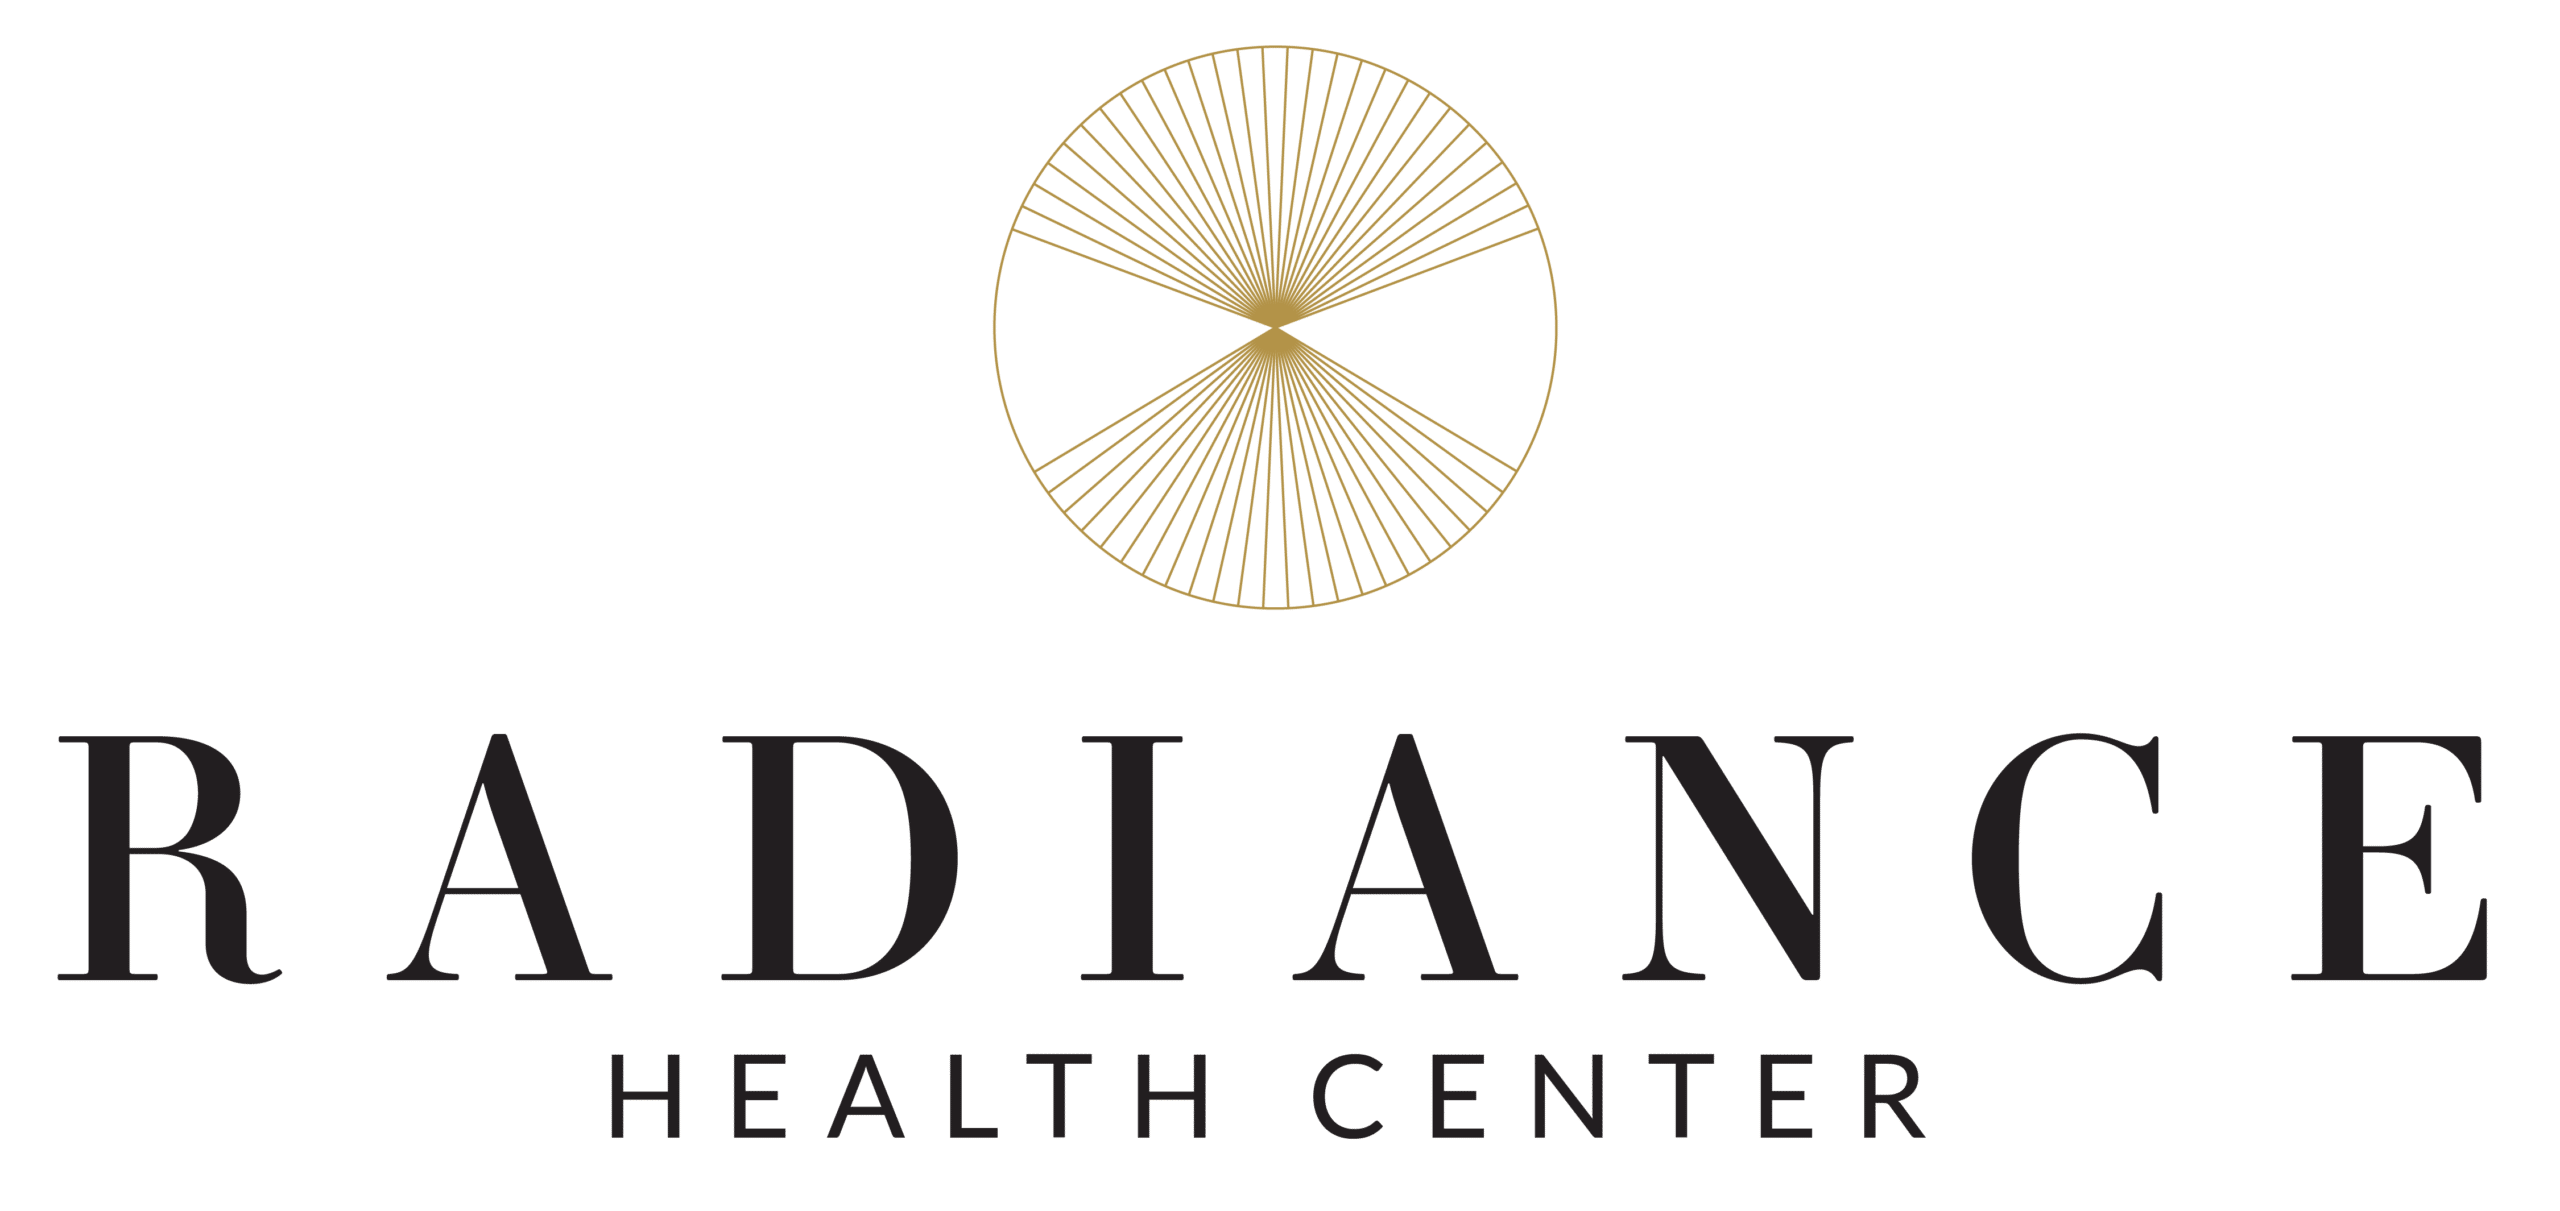 Radiance Health Center